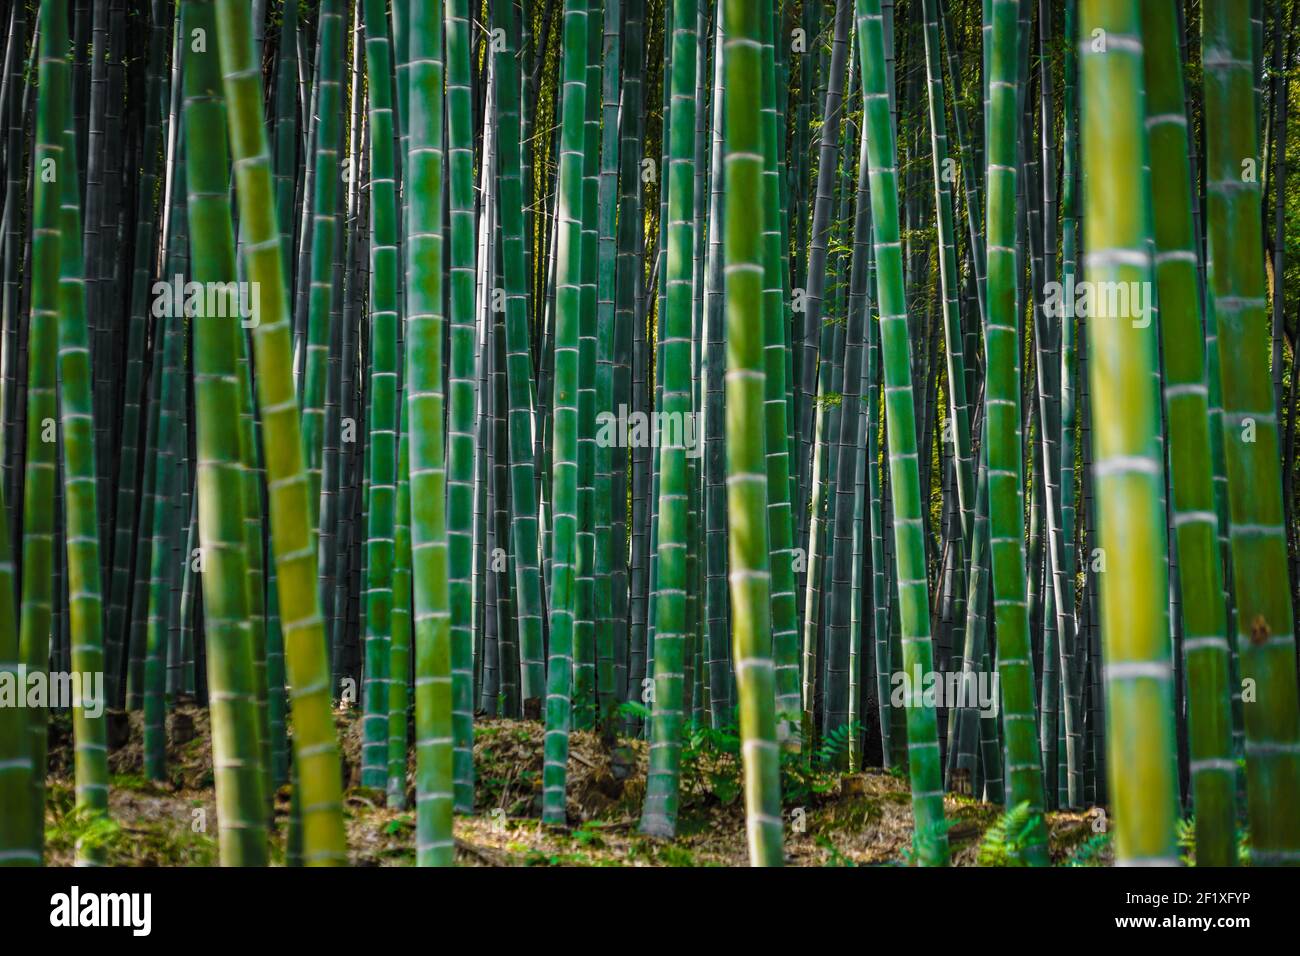 Kyoto Arashiyama bamboo forest Stock Photo